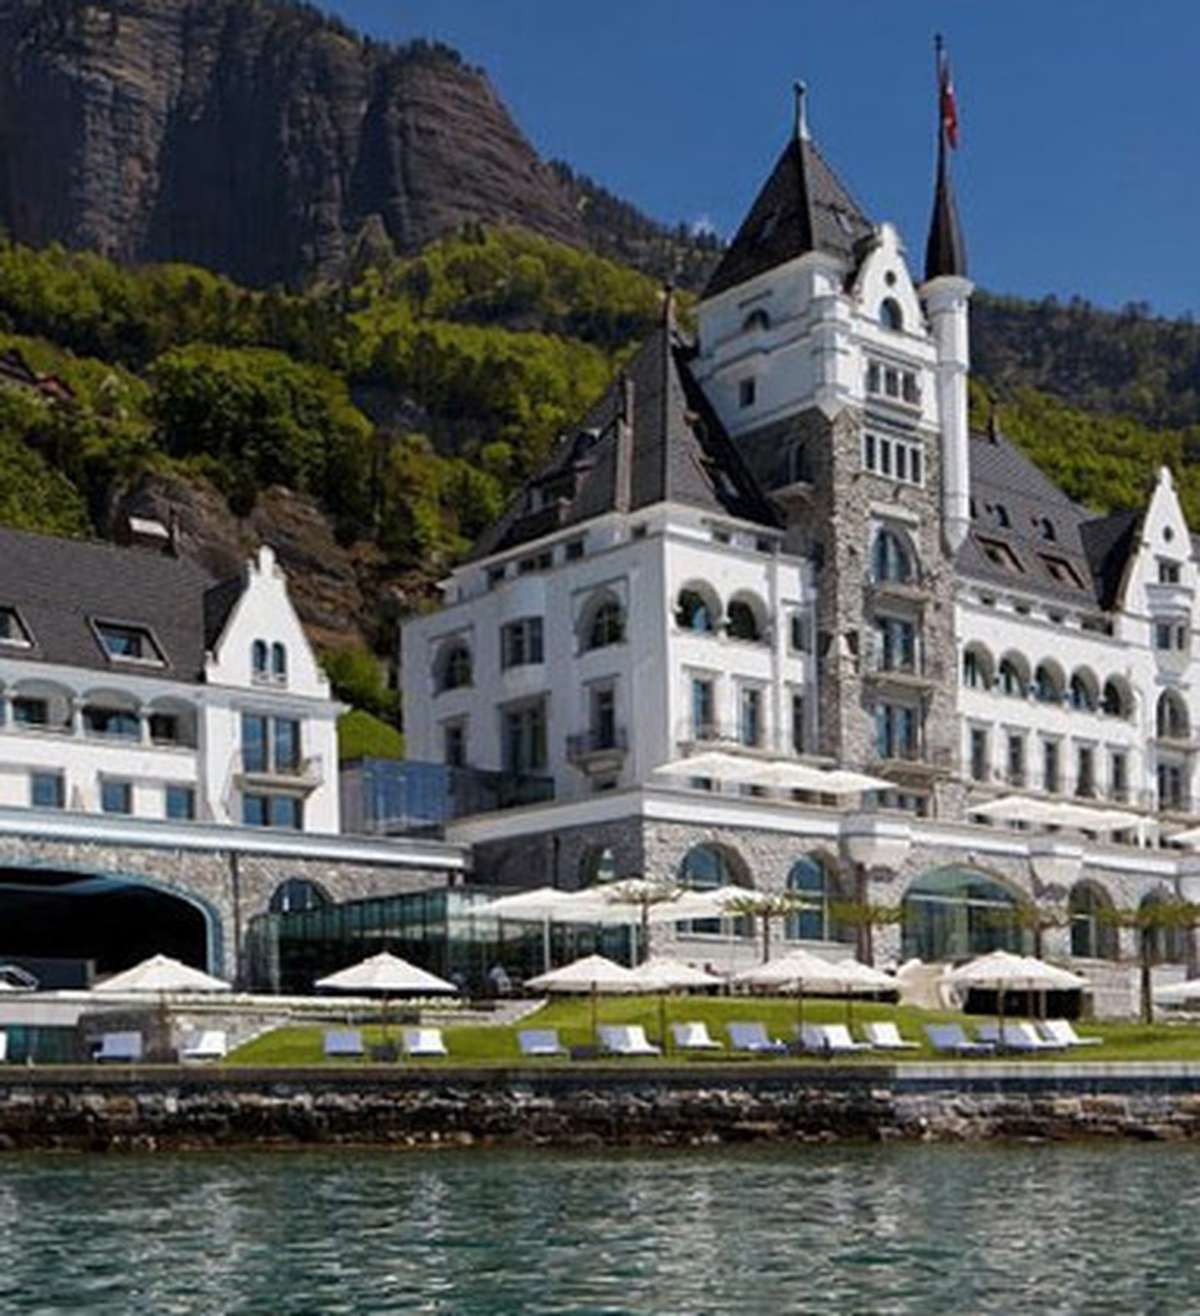 Falstaff-Ranking hievt Luzerner Hotels aufs Podest